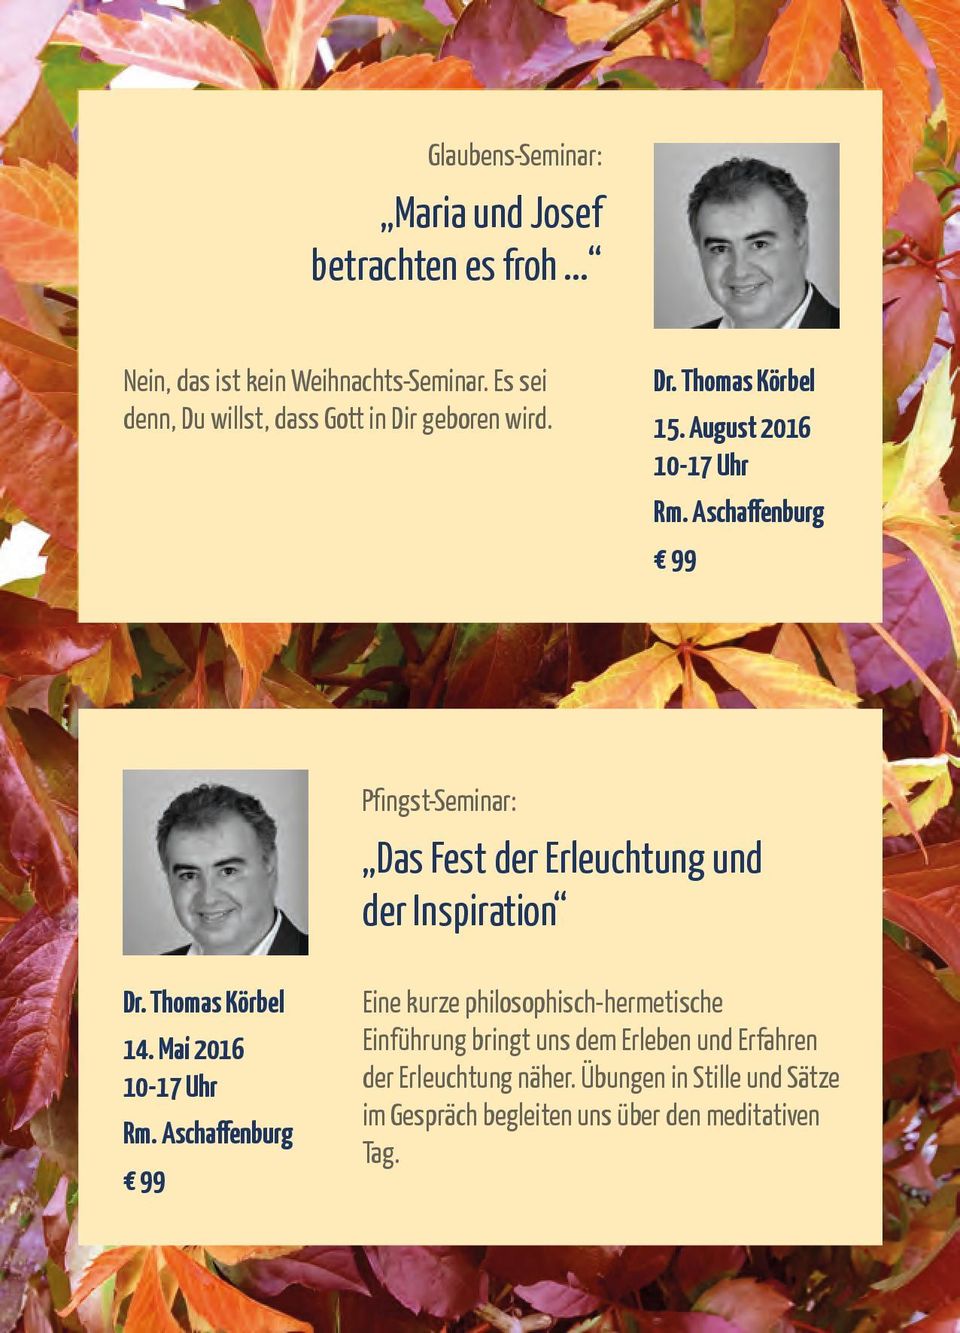 Aschaffenburg 99 Pfingst-Seminar: Das Fest der Erleuchtung und der Inspiration Dr. Thomas Körbel 14. Mai 2016 Rm.